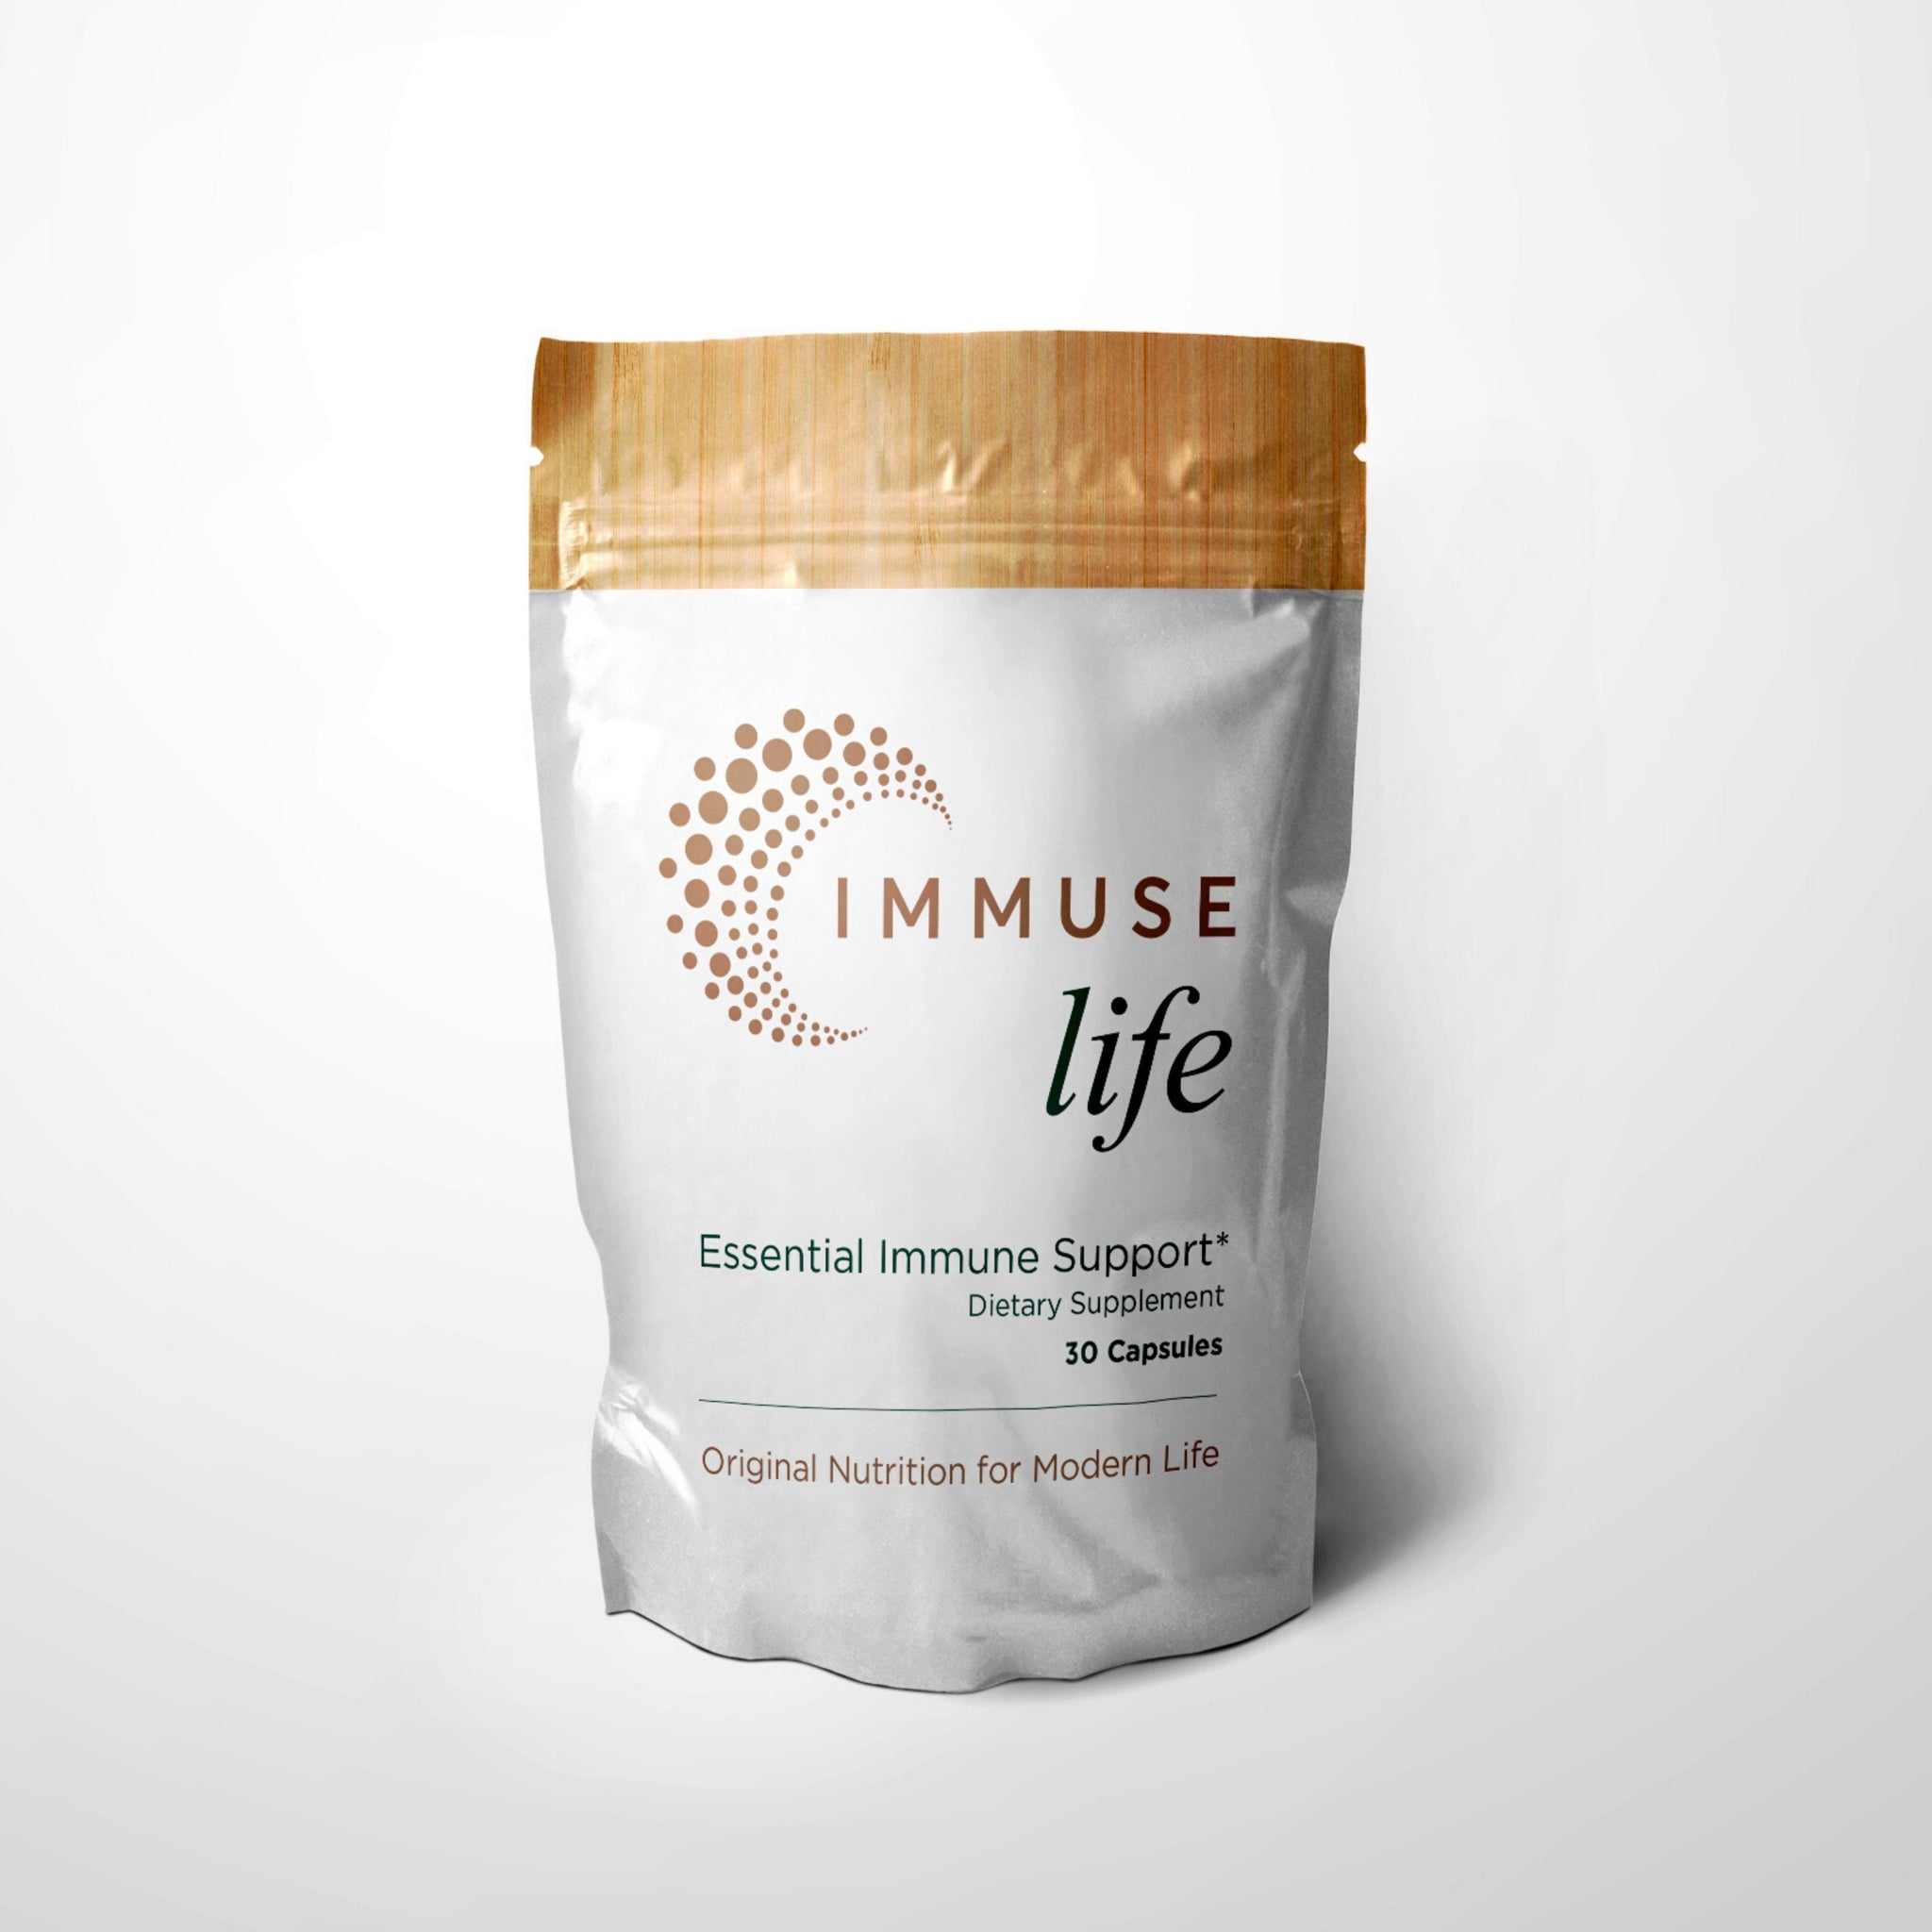 IMMUSE life Essential Immune Support Supplement